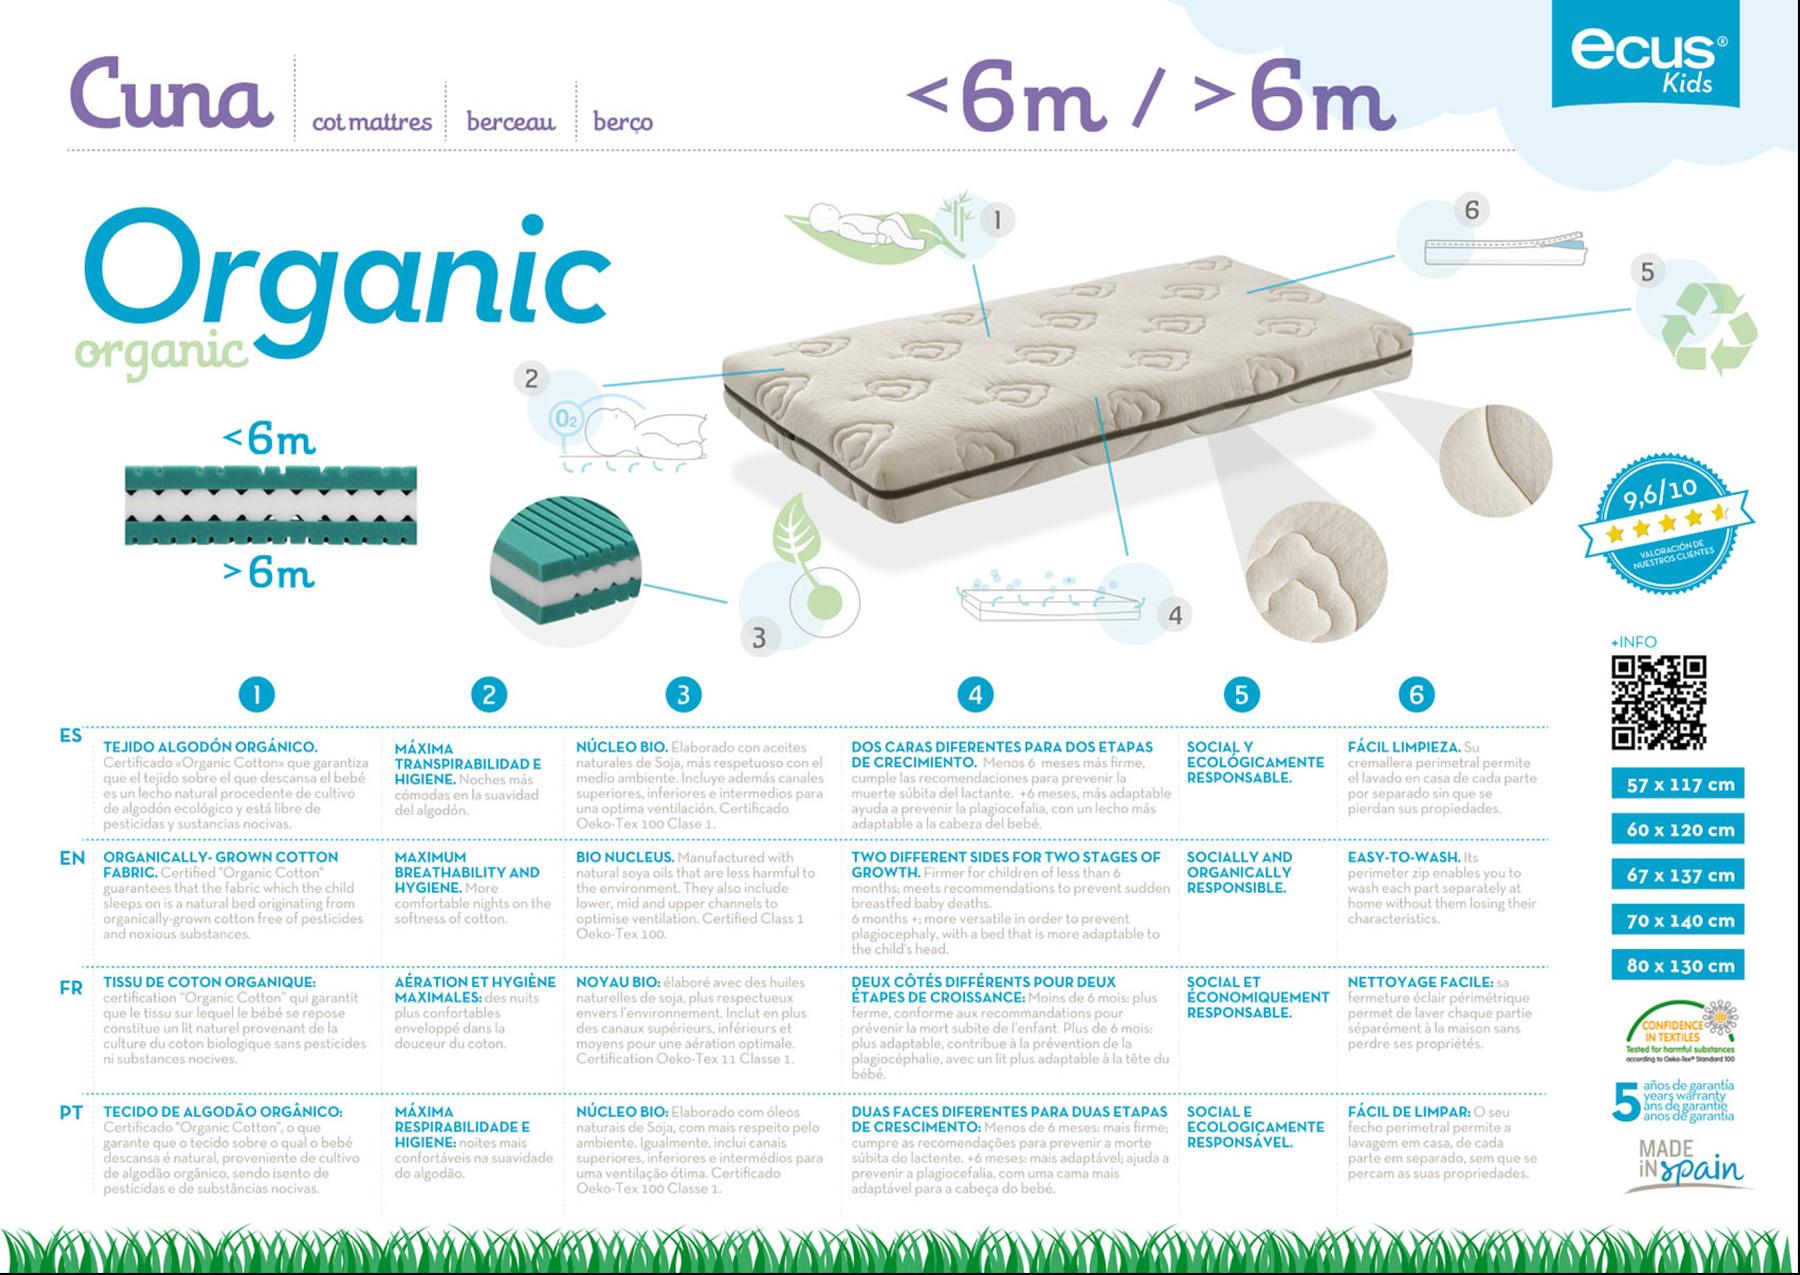 Colchón Cuna Organic - Colchón de cuna fabricado con materiales naturales y ecológicos.